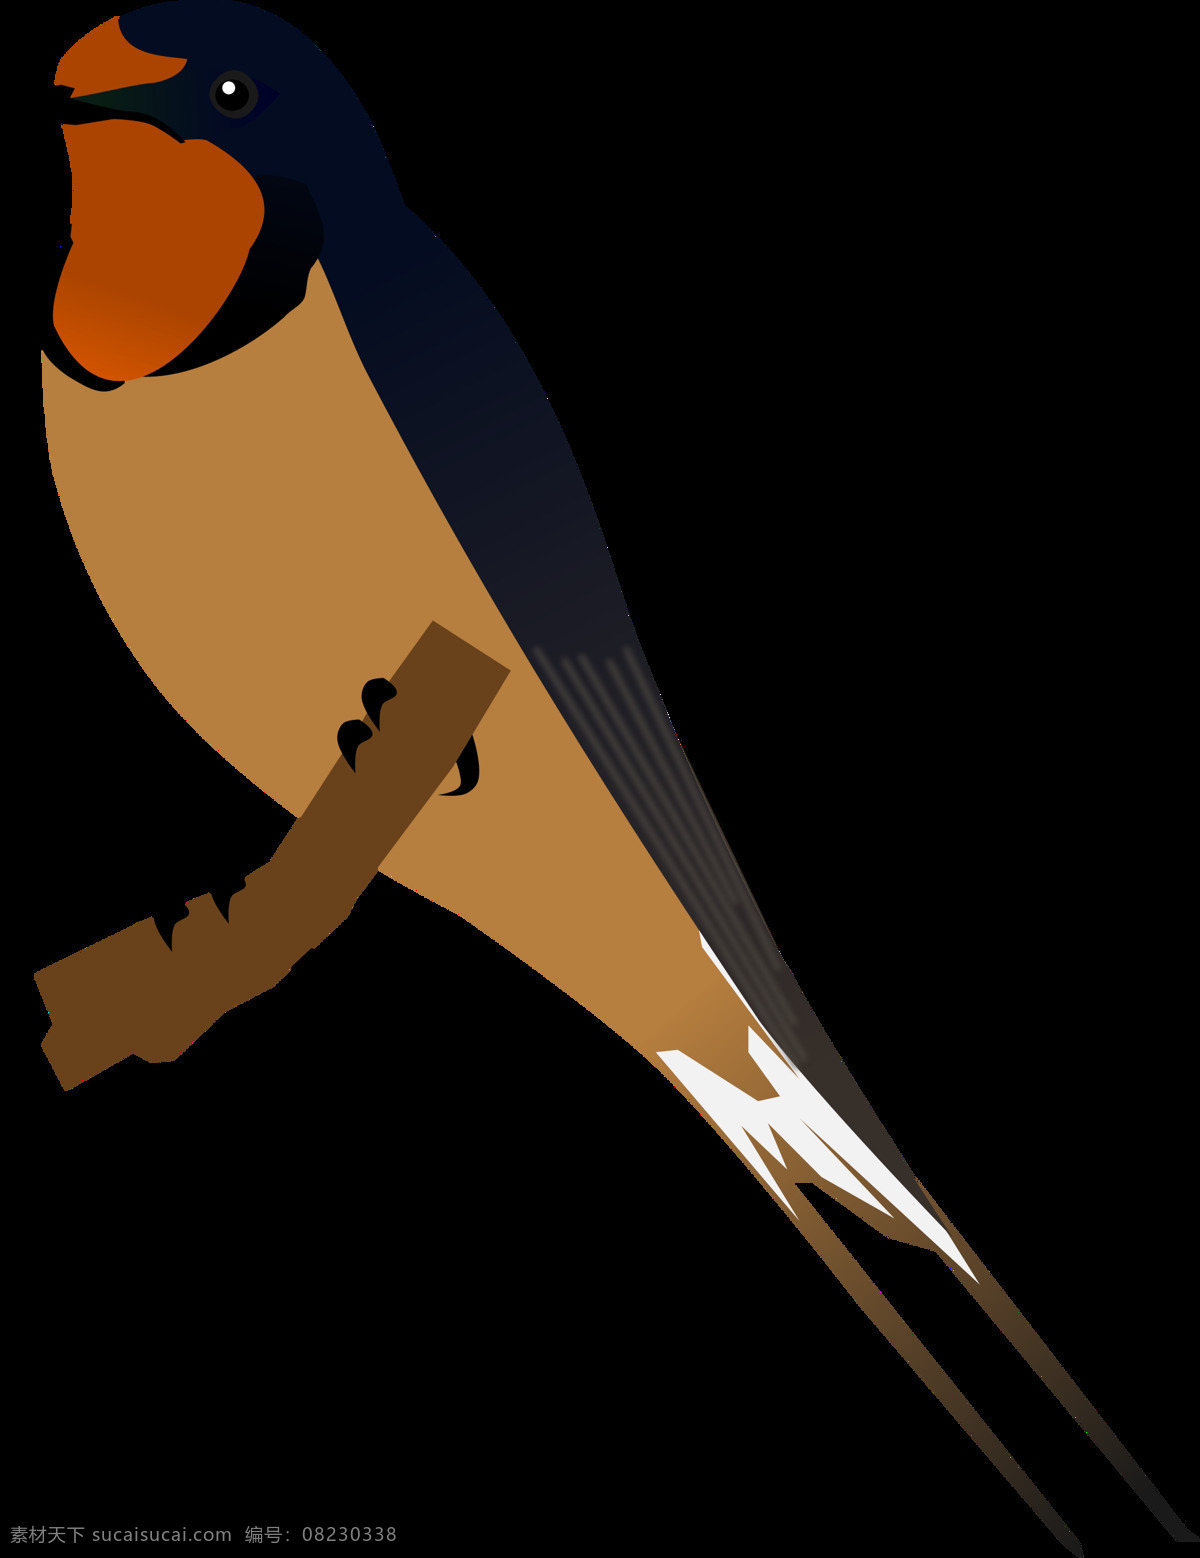 小燕子 卡通燕子 手绘燕子 鸟 小鸟 鸟类 动物 生物世界